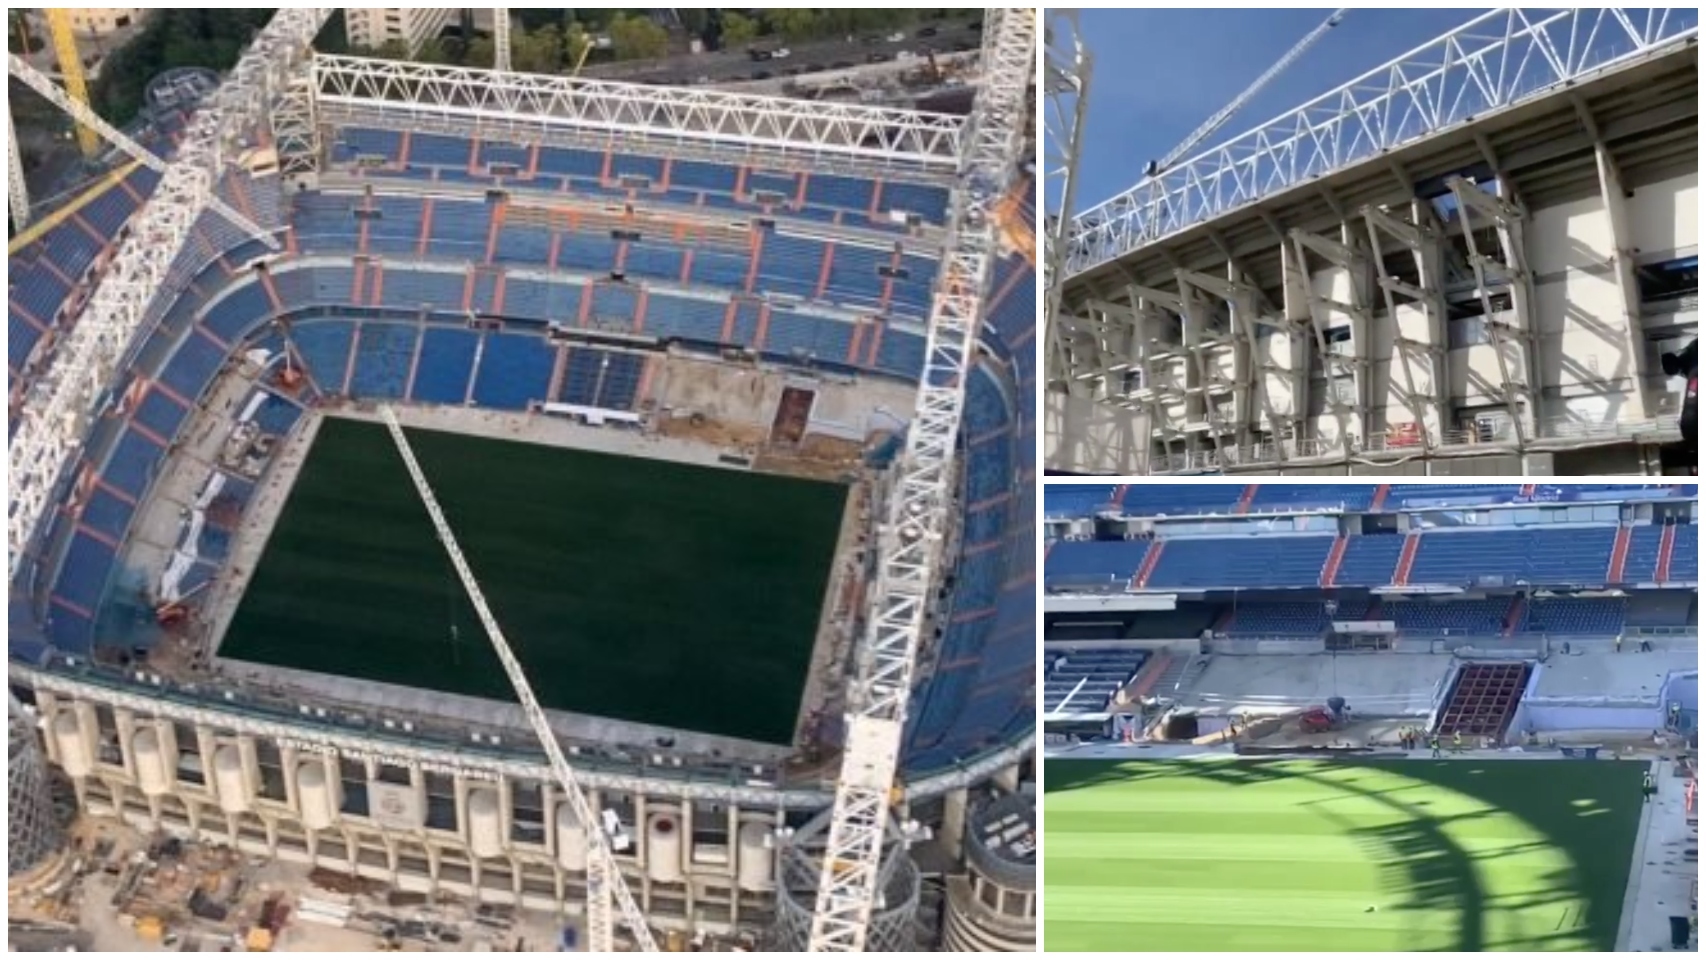 El nuevo Santiago Bernabéu toma forma: la base de la cubierta retráctil, la fachada y el interior